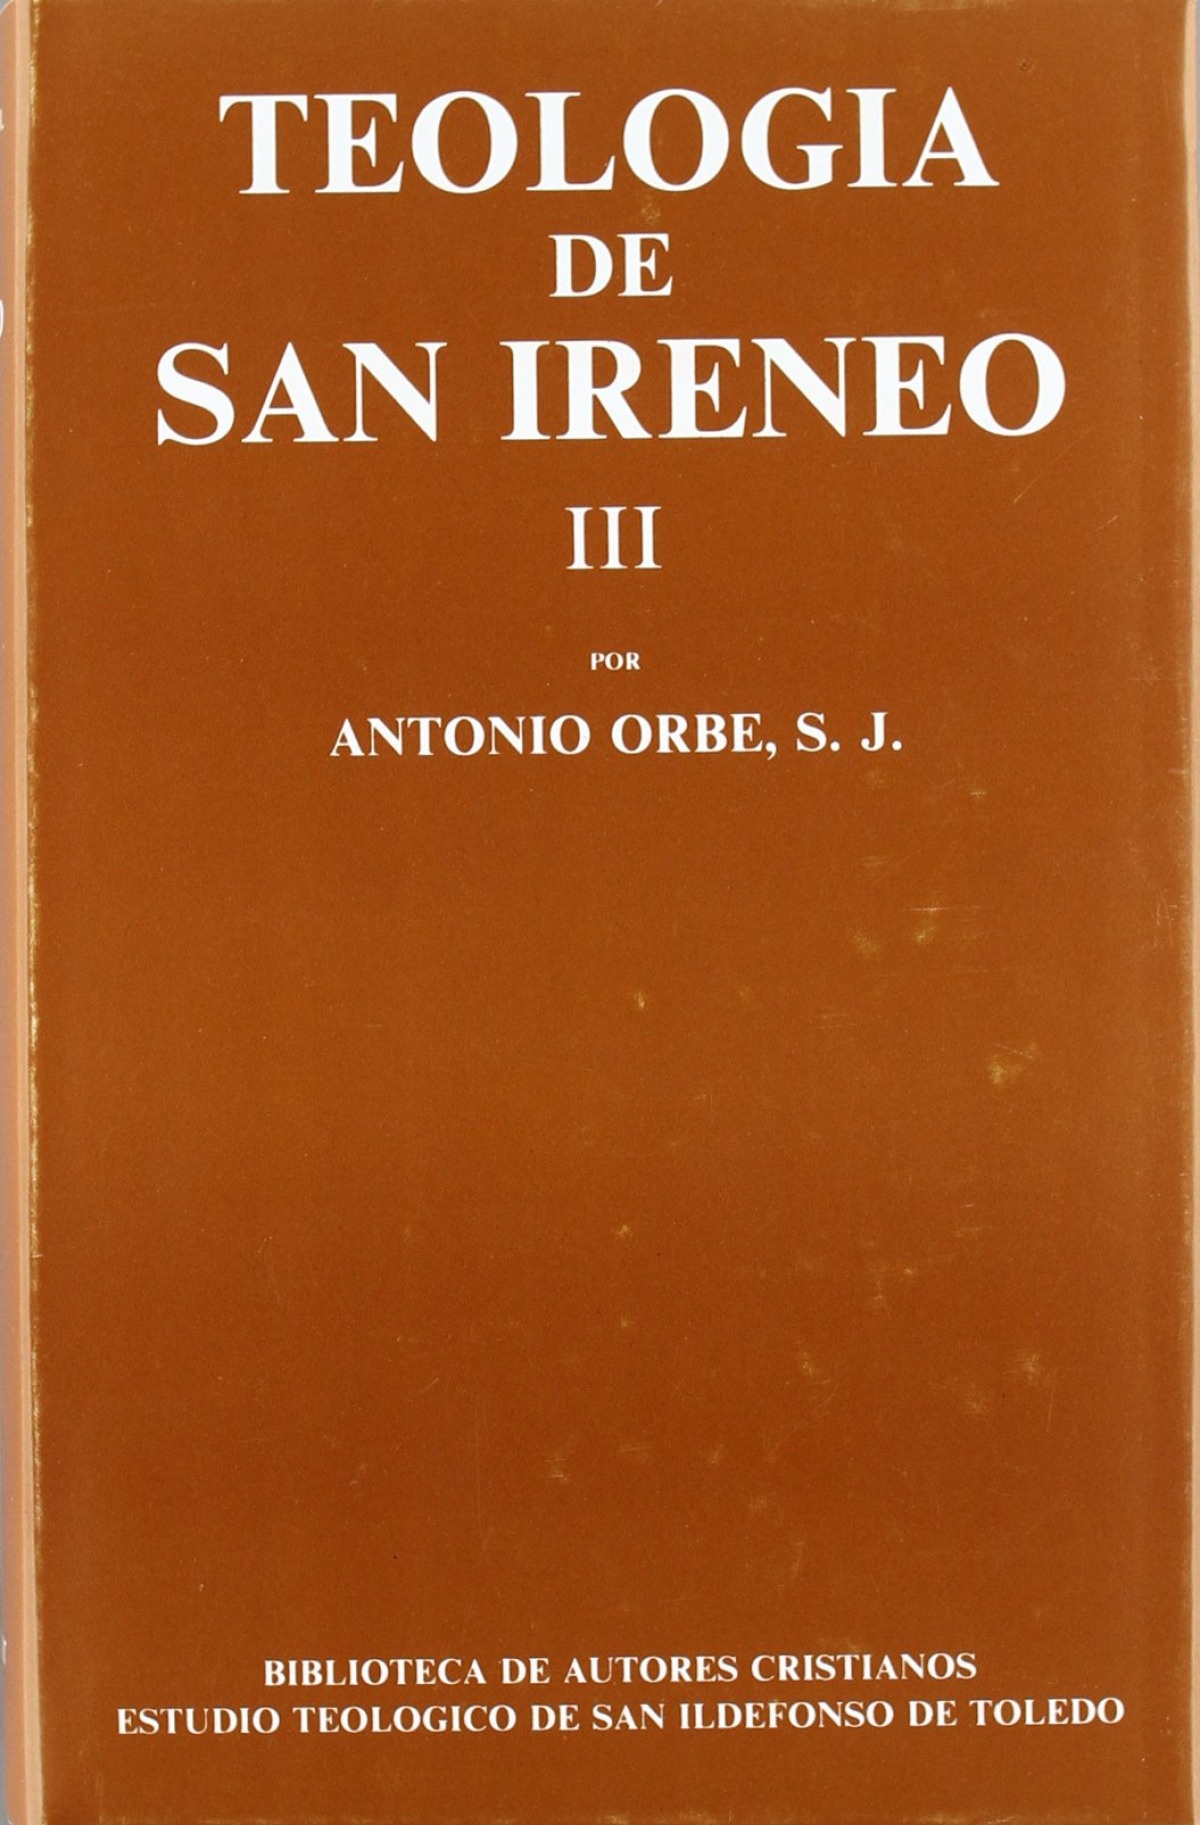 Teología de San Ireneo.III: Comentario al libro V del Adversus haerese - Orbe, Antonio